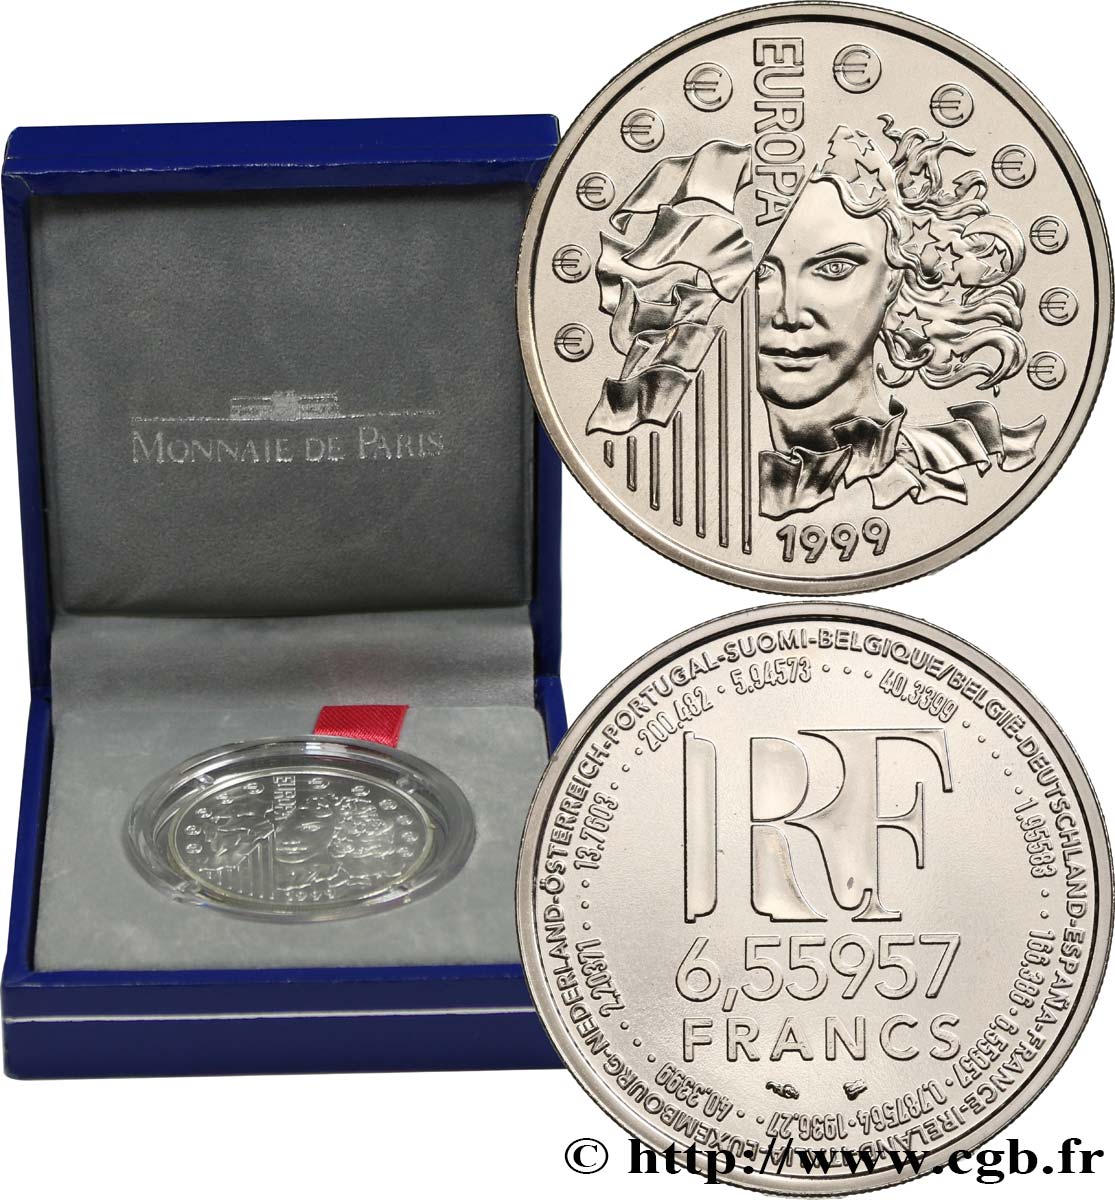 Brillant Universel 6,55957 francs - La parité 1999 Paris F.1250 2 ST 